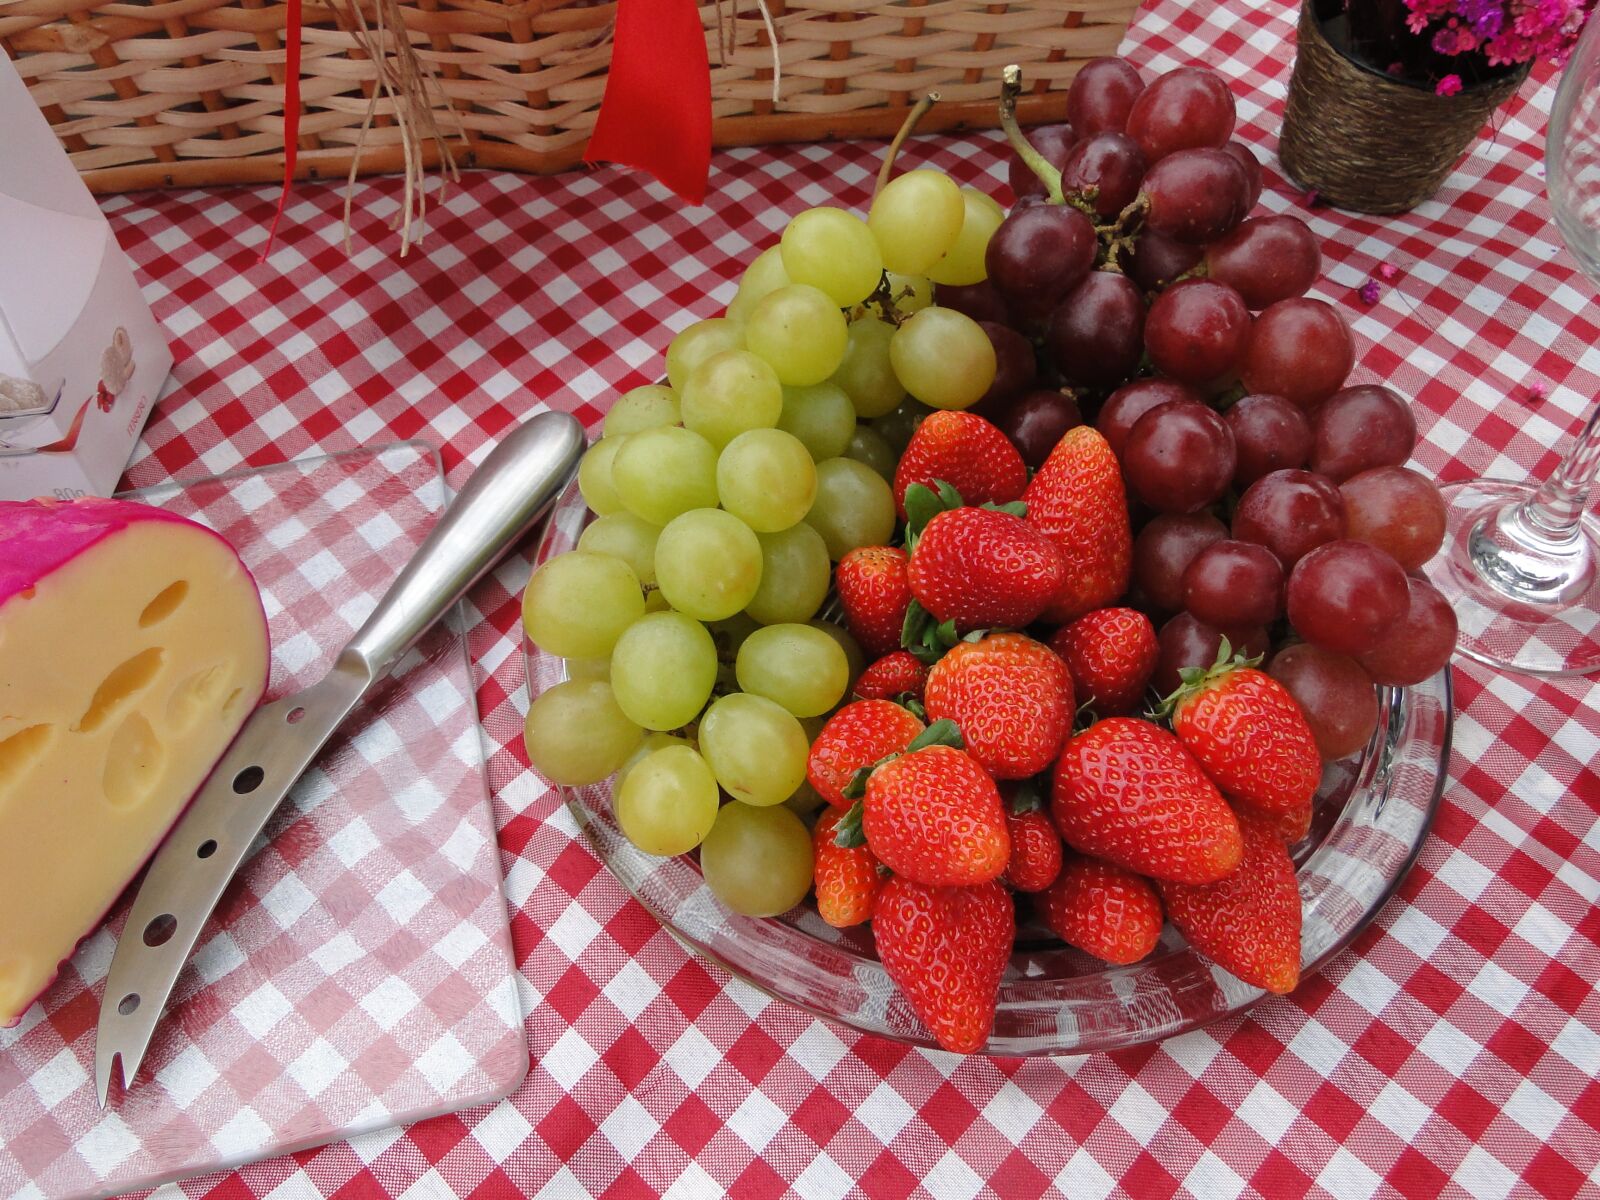 Sony Cyber-shot DSC-HX1 sample photo. Fruit, picnic, nutrition photography